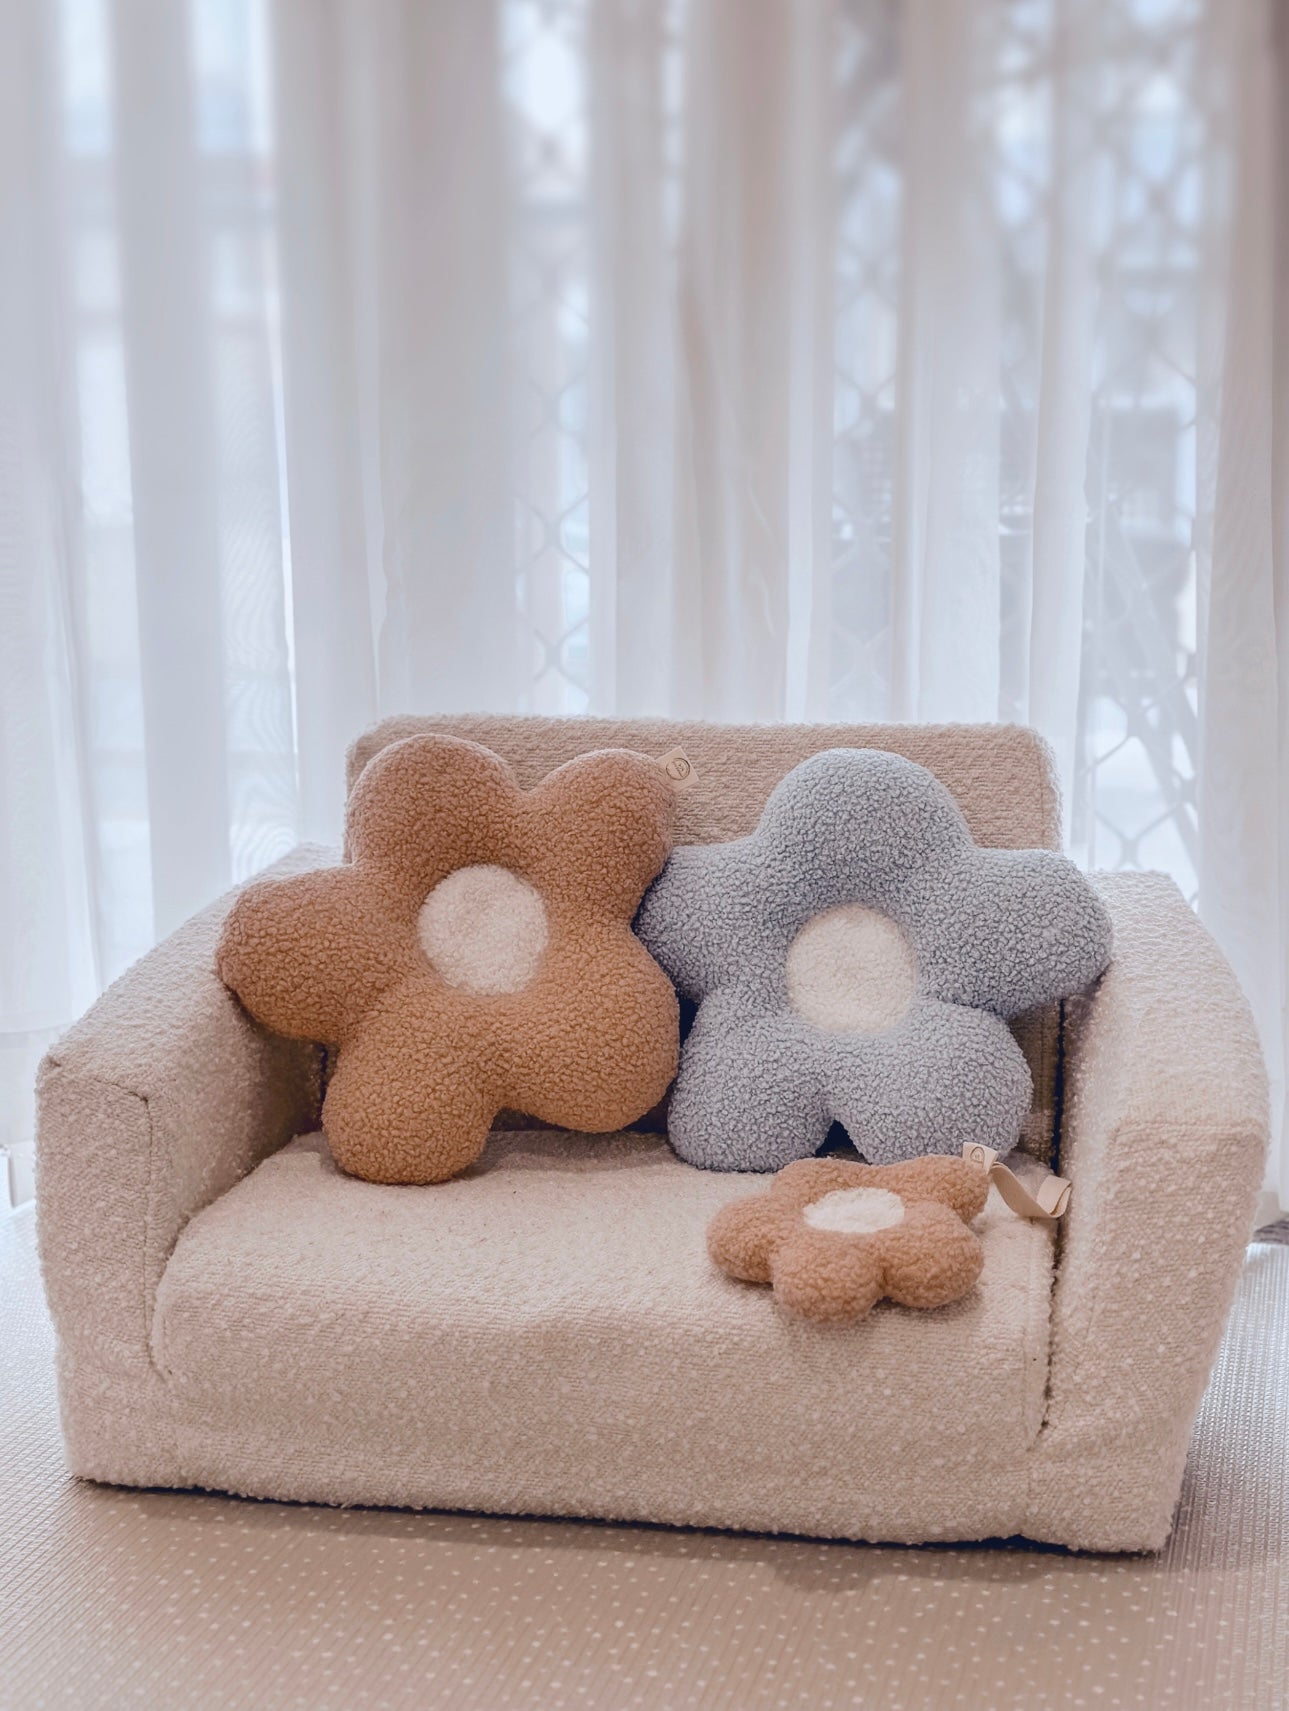 Daisy cushions